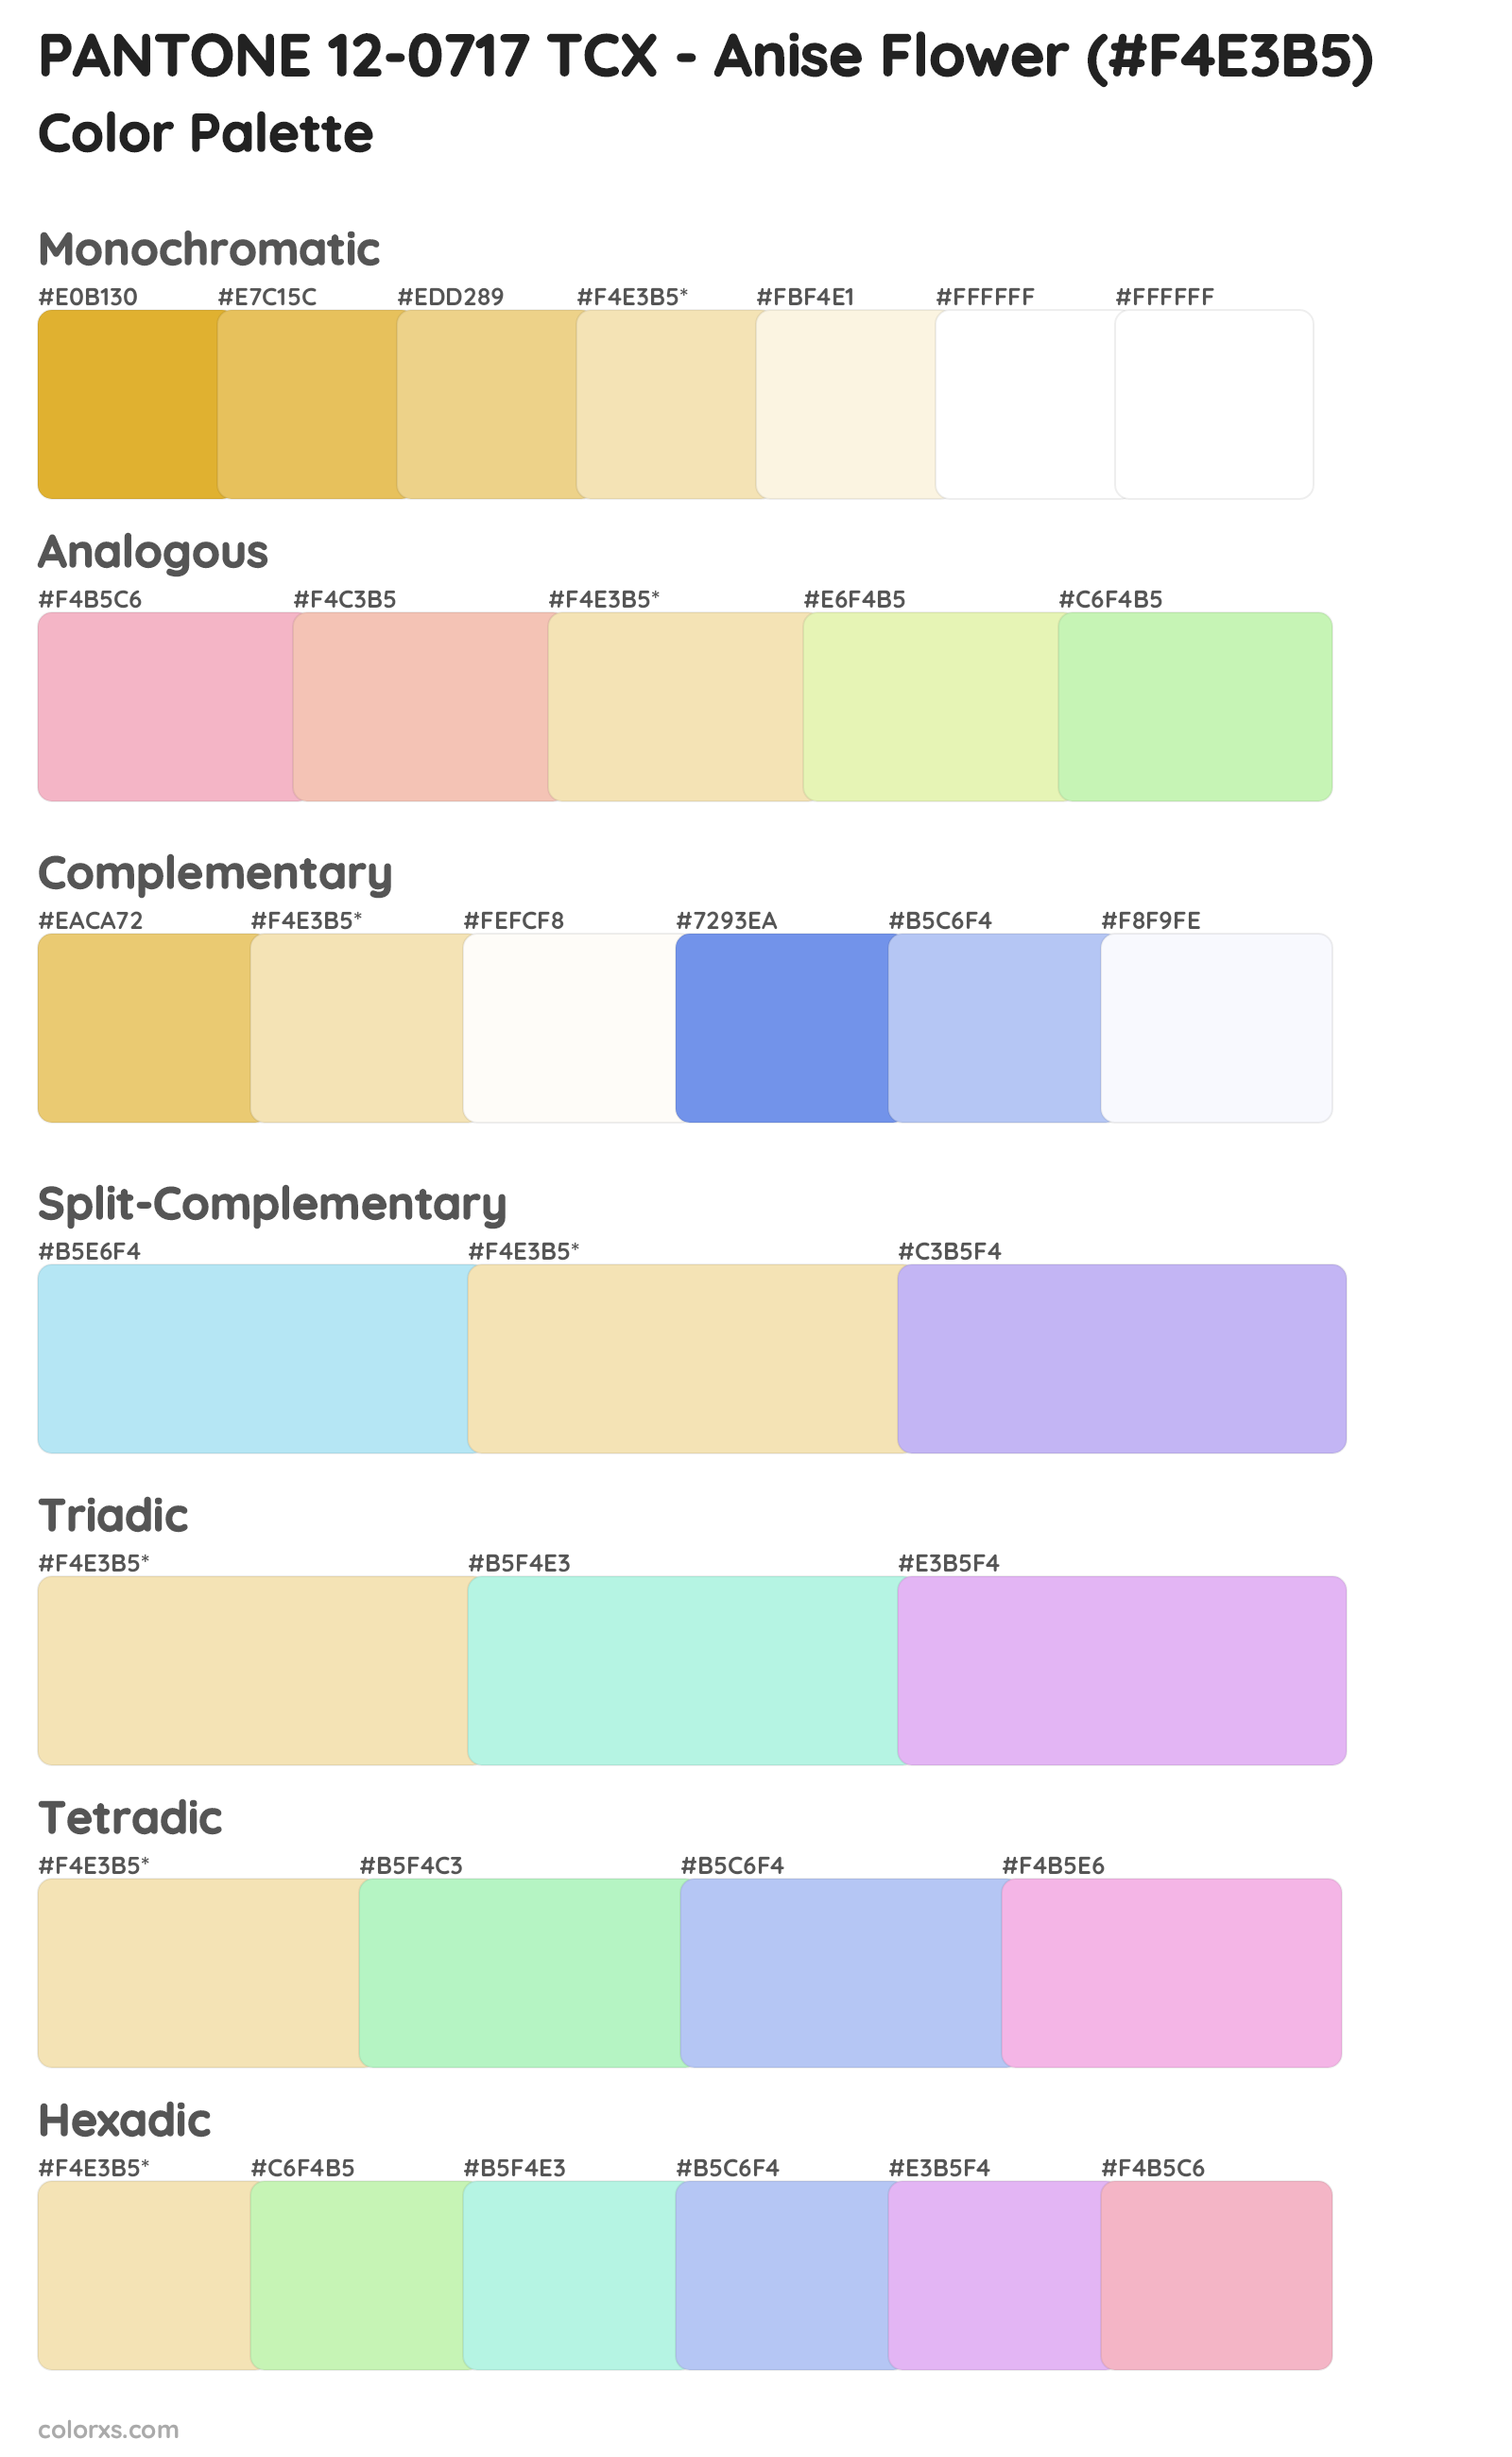 PANTONE 12-0717 TCX - Anise Flower Color Scheme Palettes